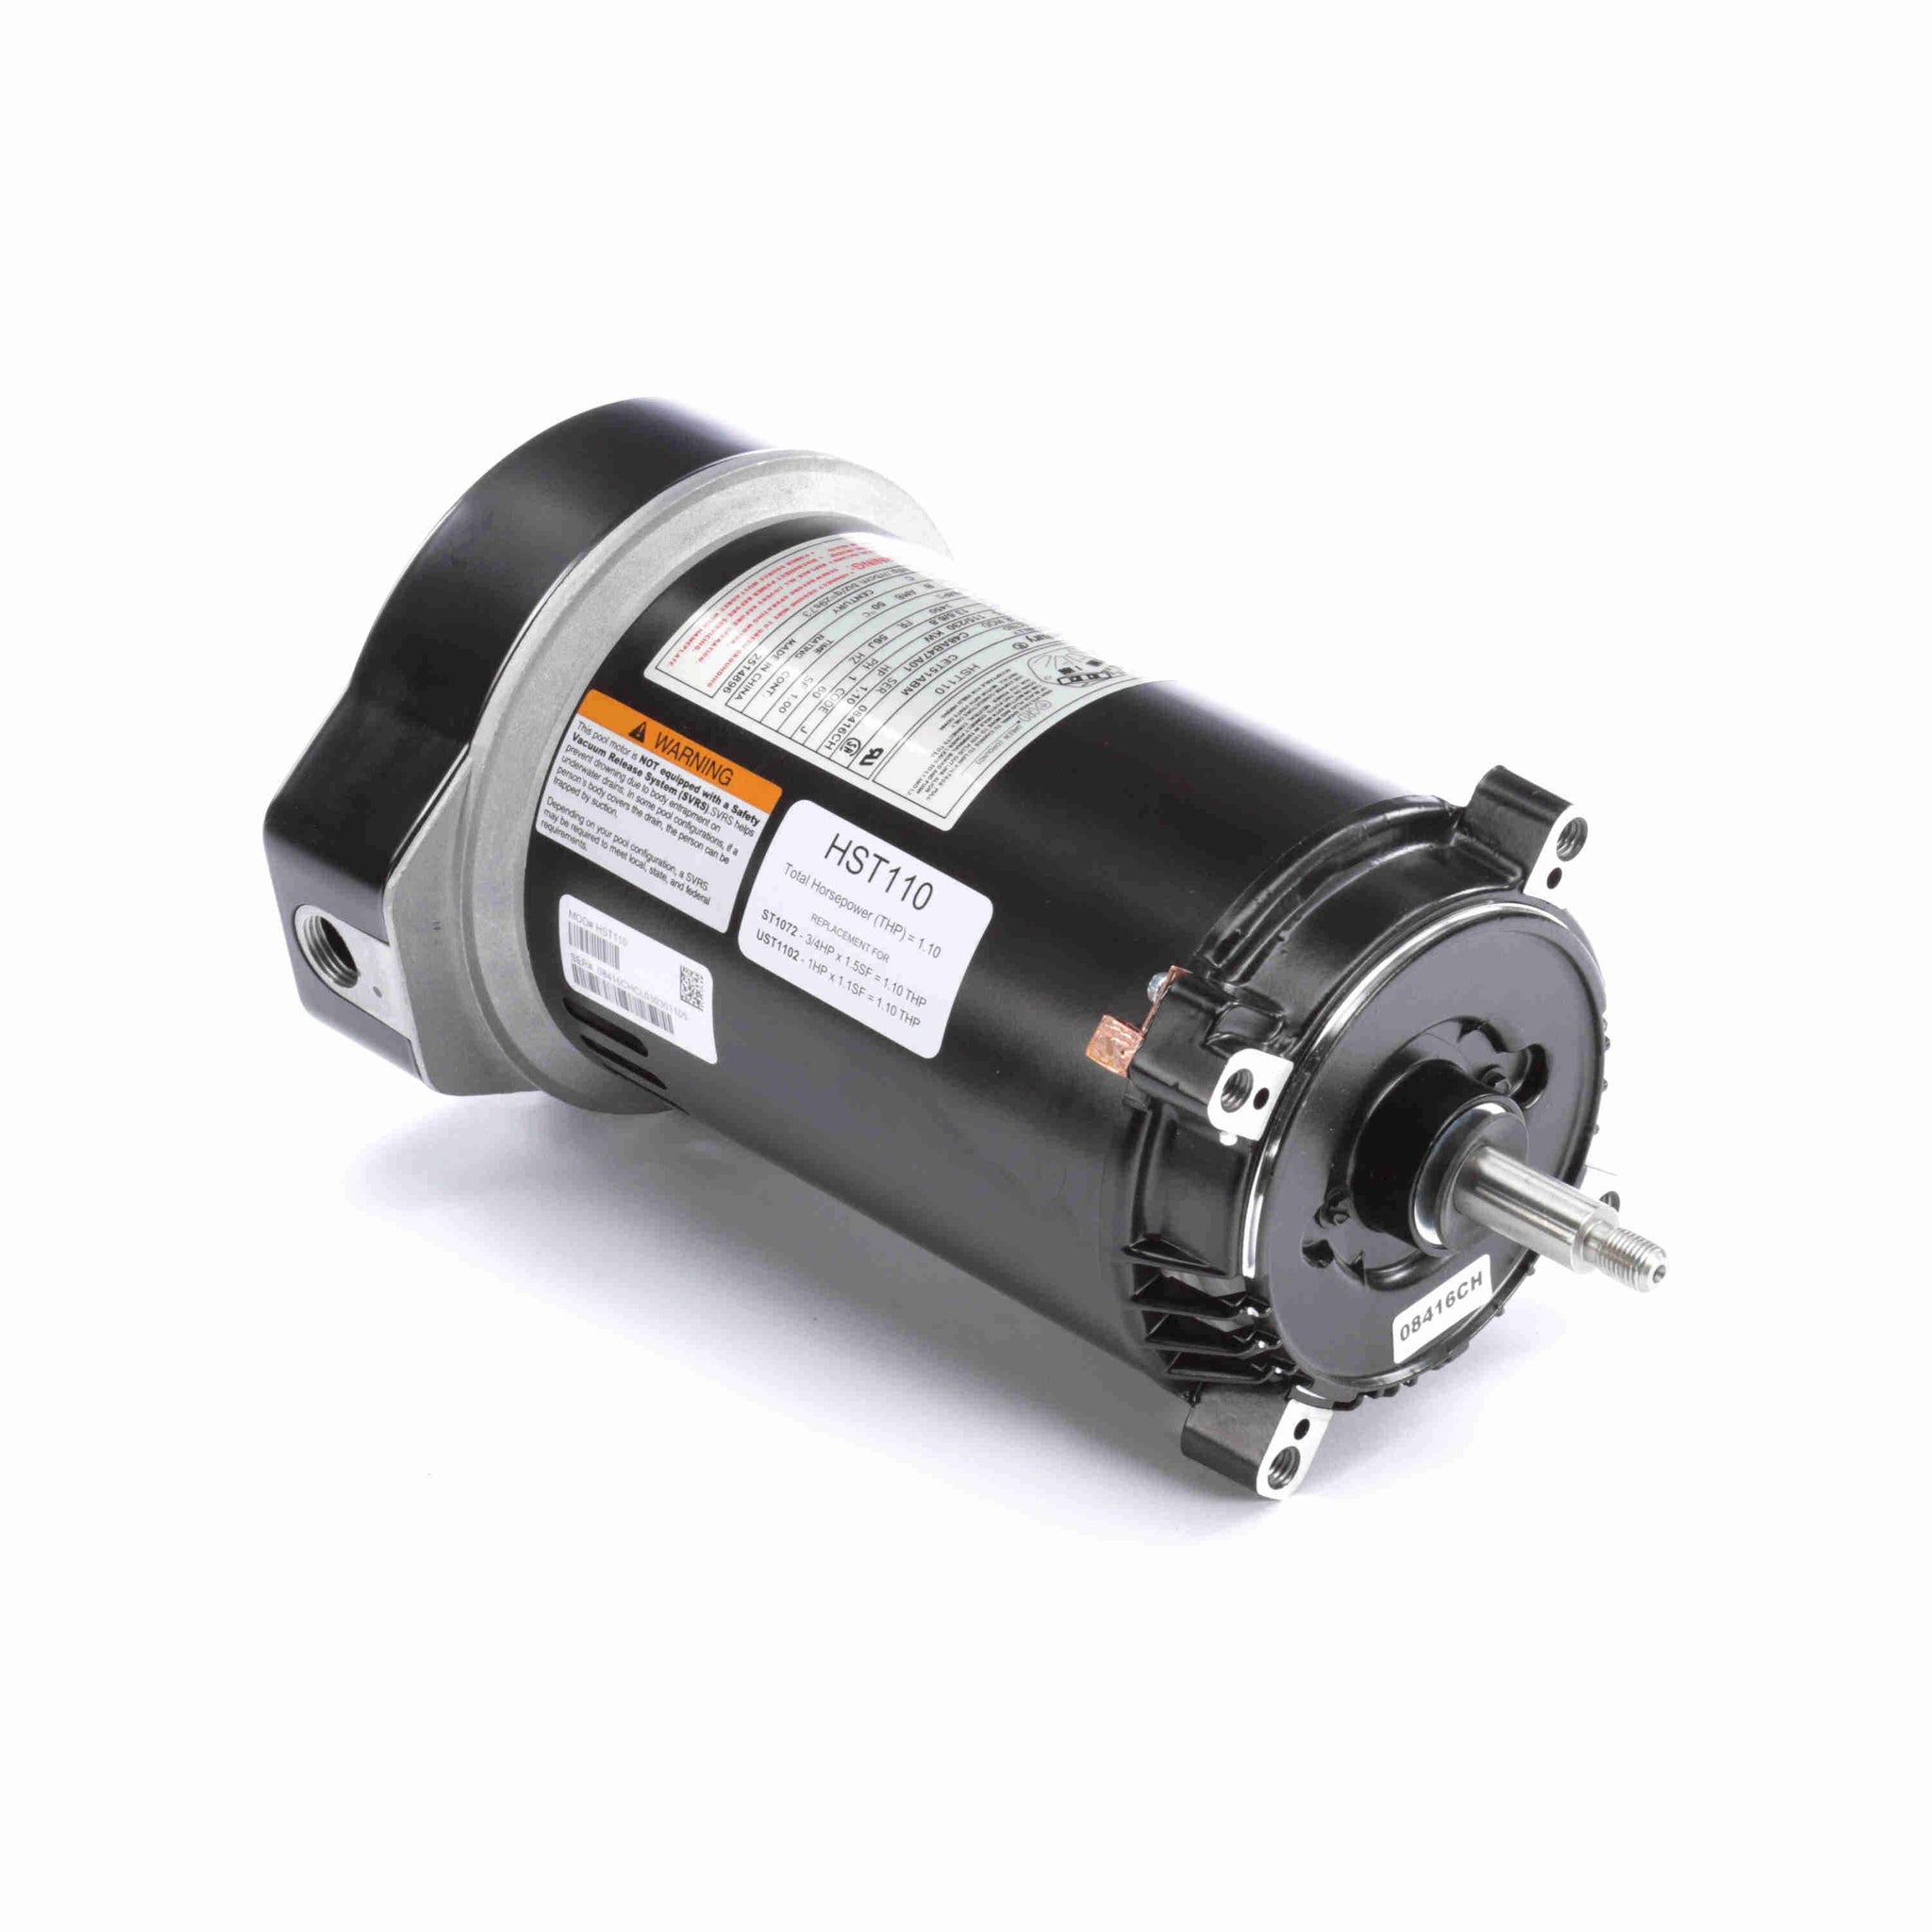 HST110 - 1.10 HP Pool Pump Motor, 1 phase, 3600 RPM, 230/115 V, 56J Frame, ODP - Hardware & Moreee